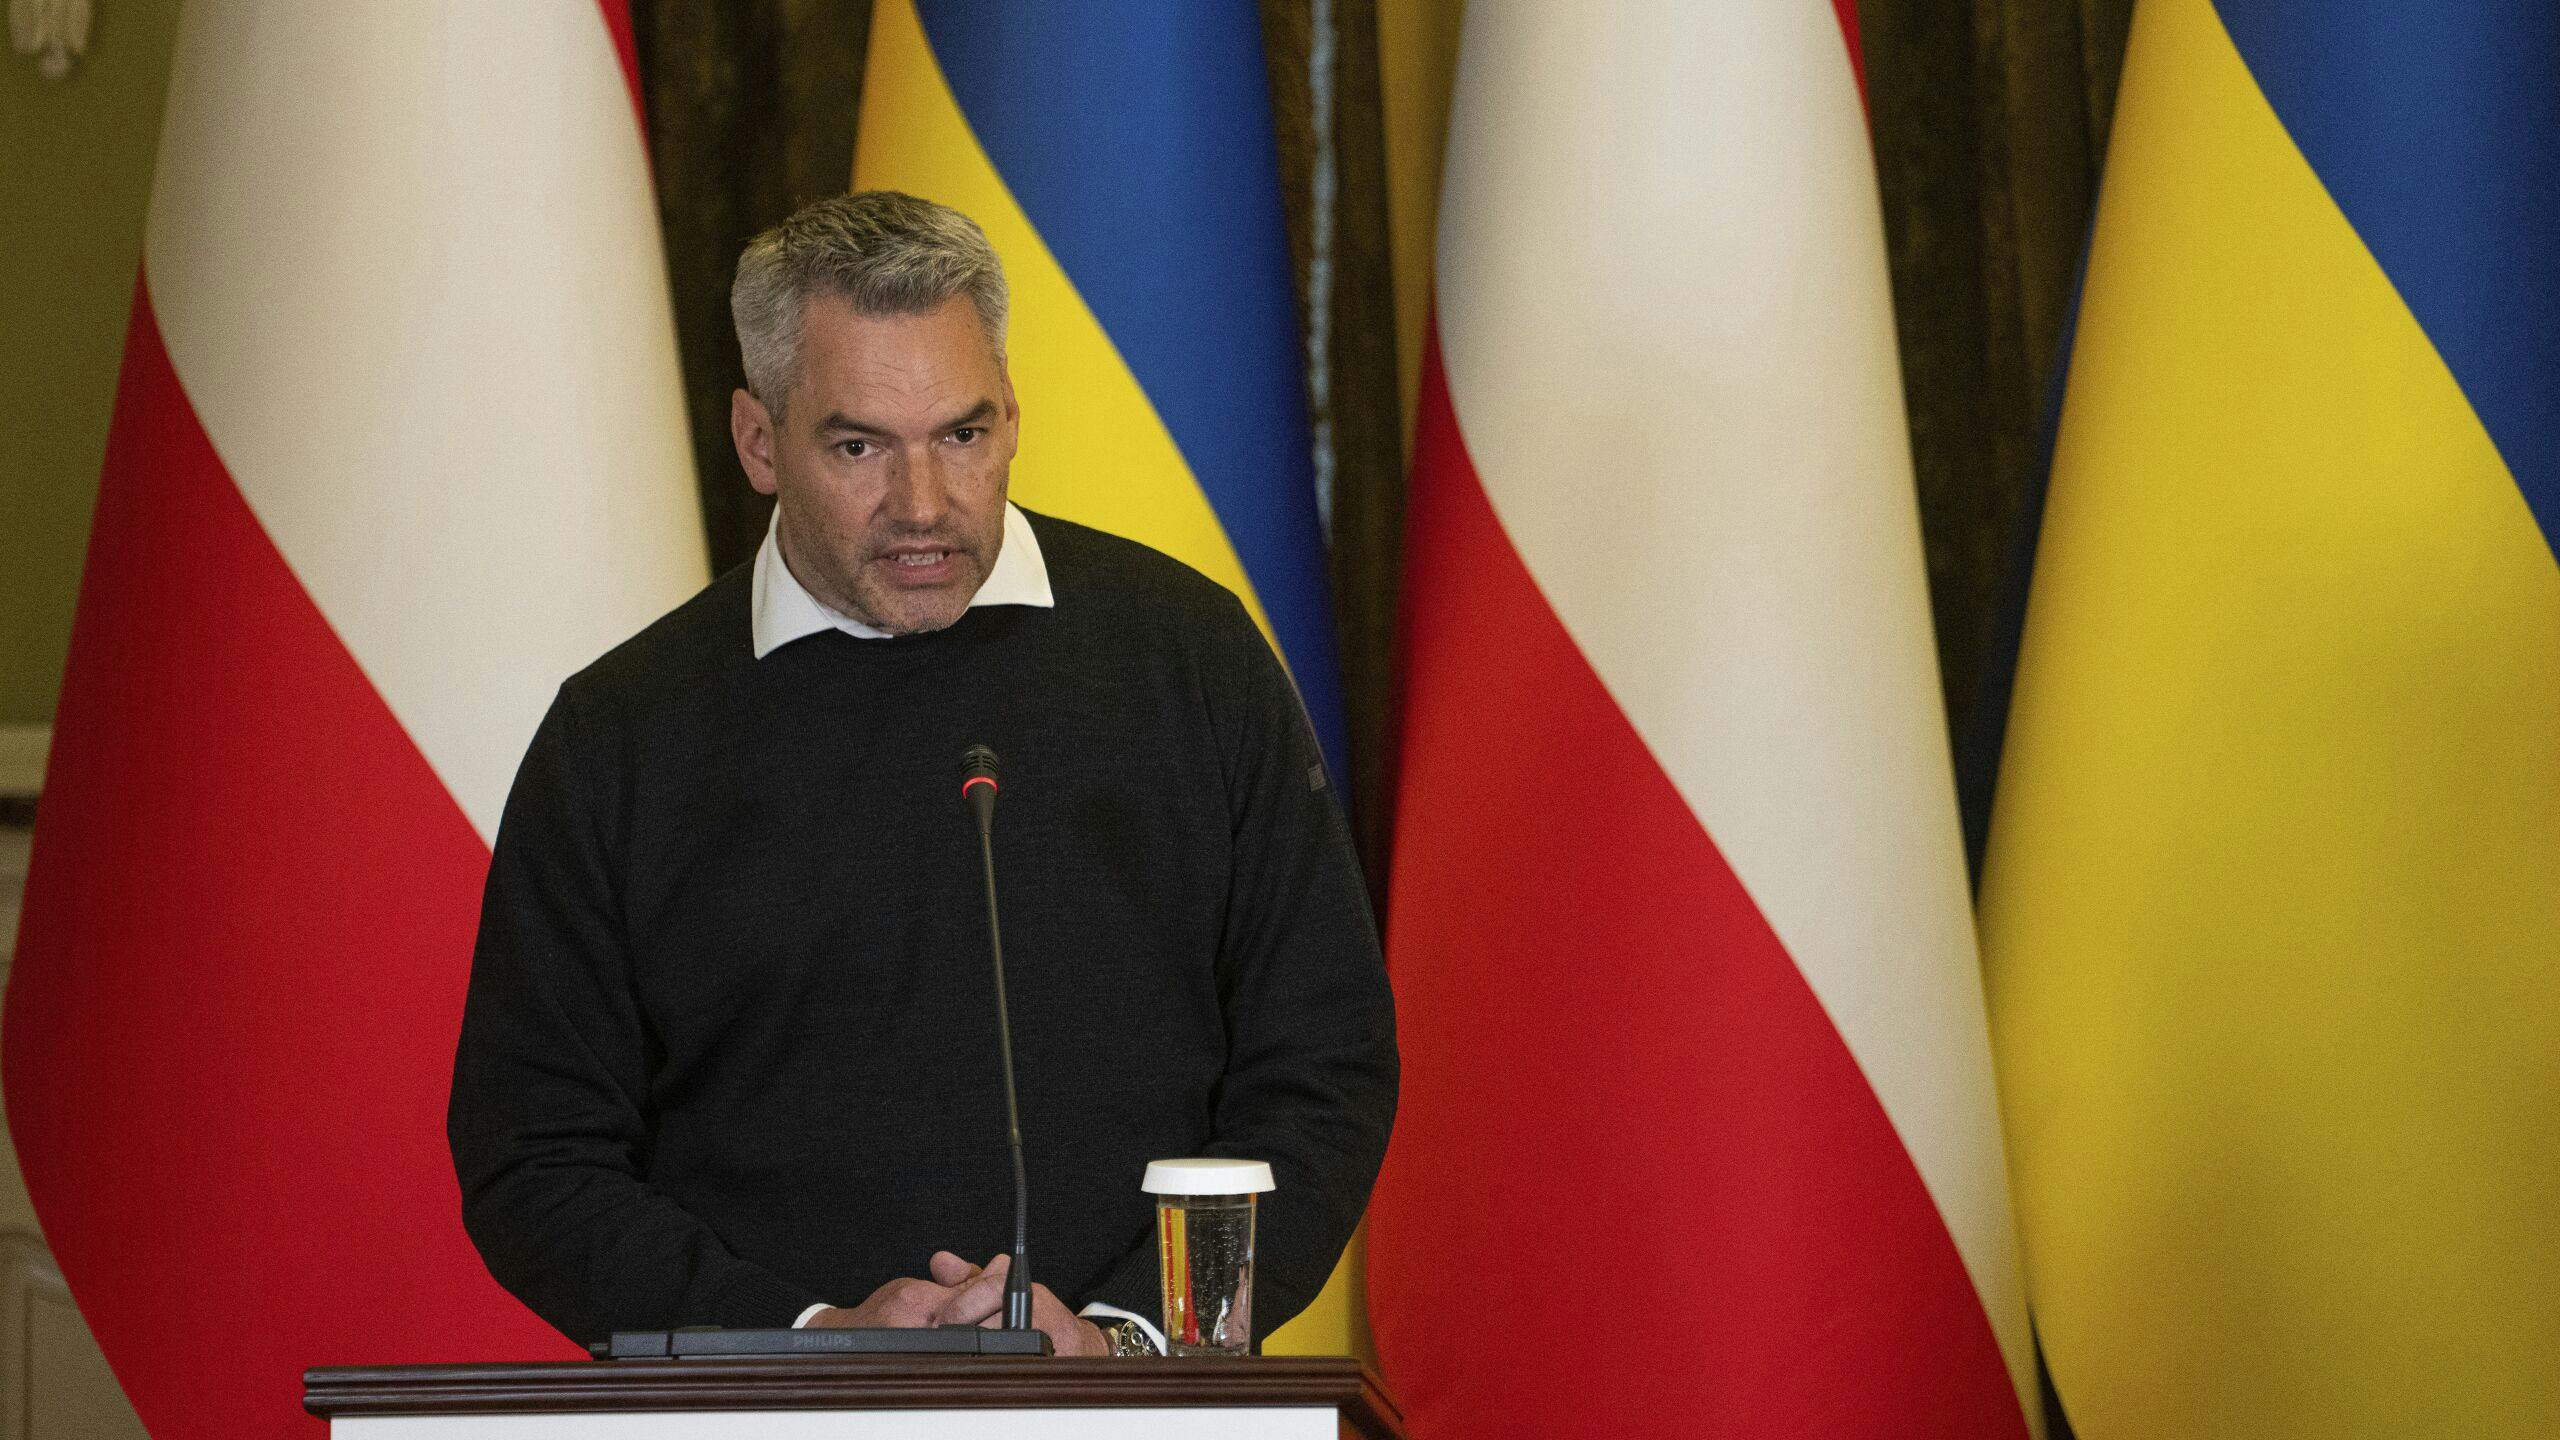 Kanselier Karl Nehammer tijdens en persconferentie in Kiev